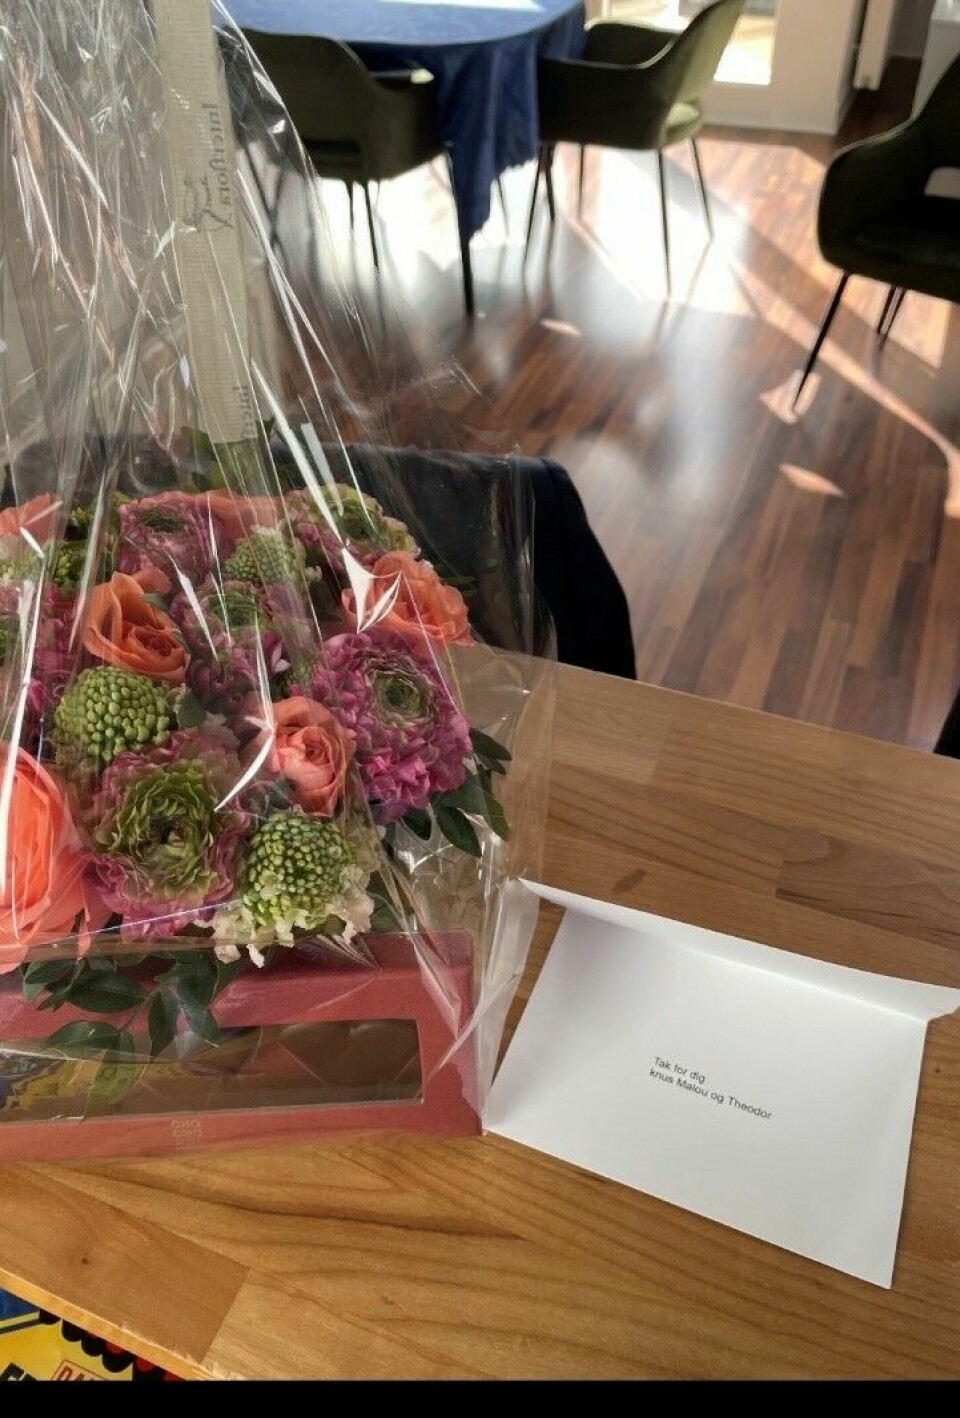 Malou Petersen sendte en blomsterbuket til Martin i lørdags. I kortet står der 'Tak for dig'.